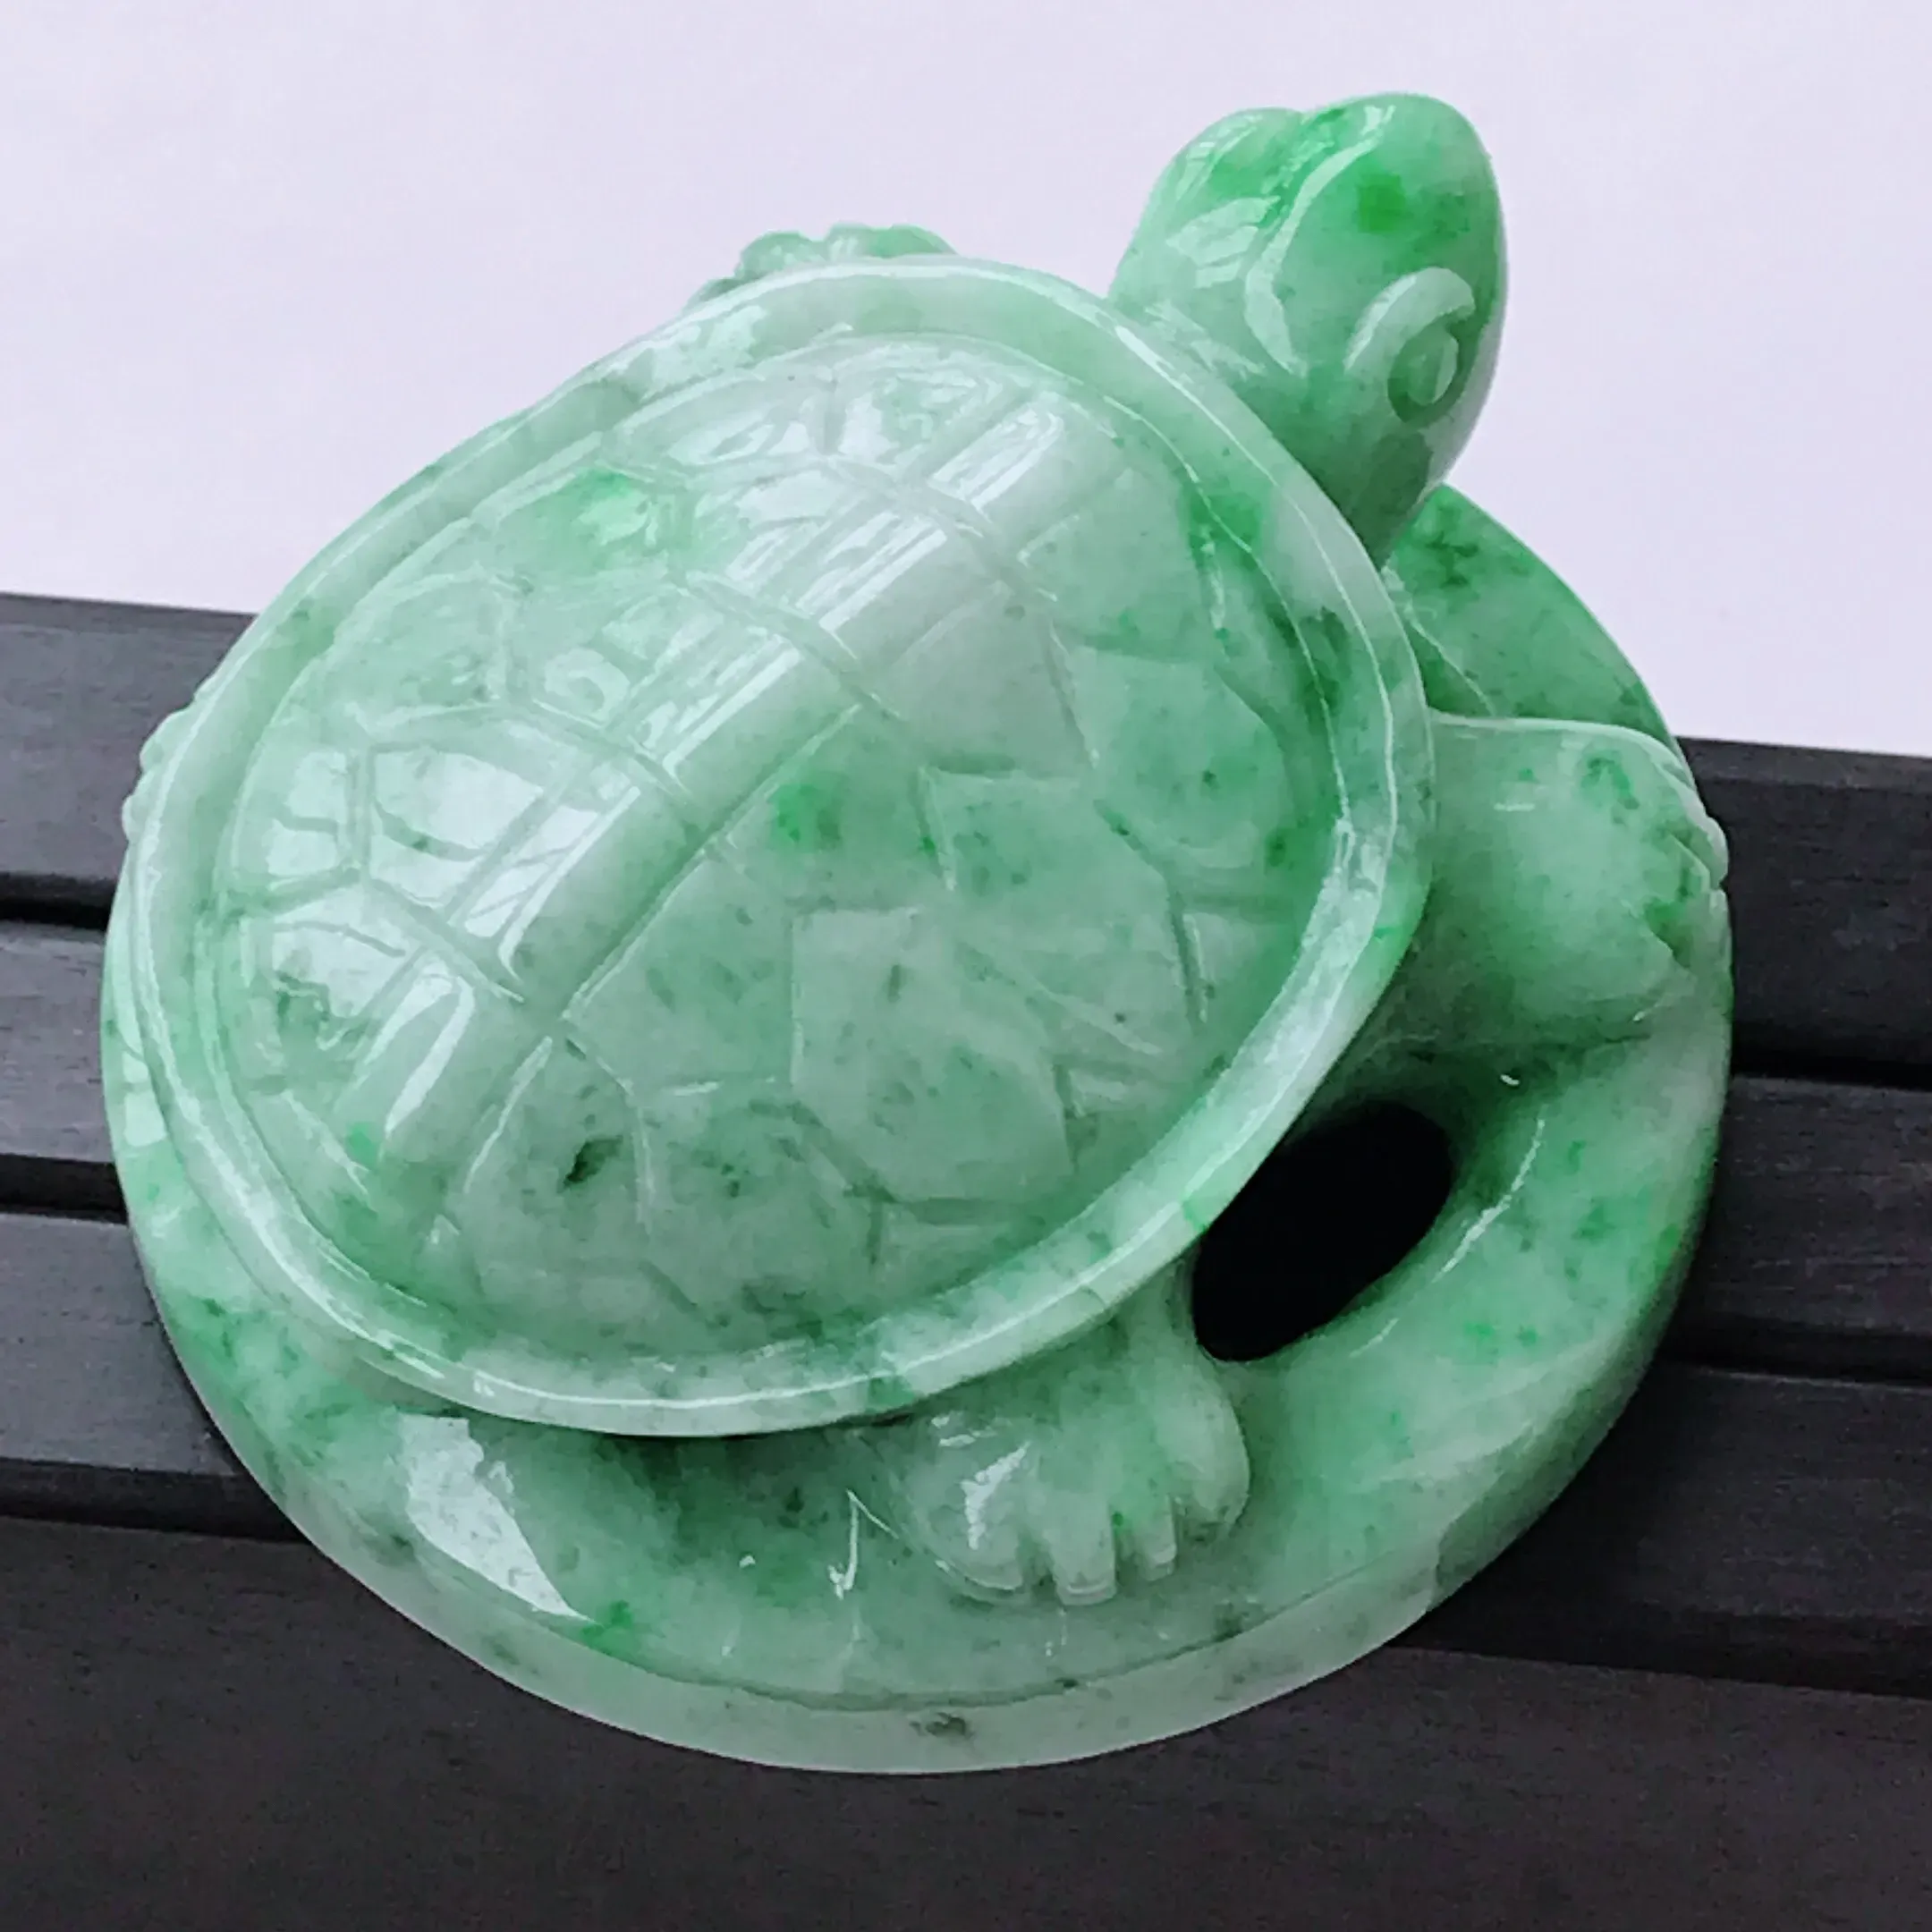 水润飘绿长寿龟翡翠摆件 玉质细腻  冰清玉润  颜色漂亮  尺寸45.3/45.3/23.0